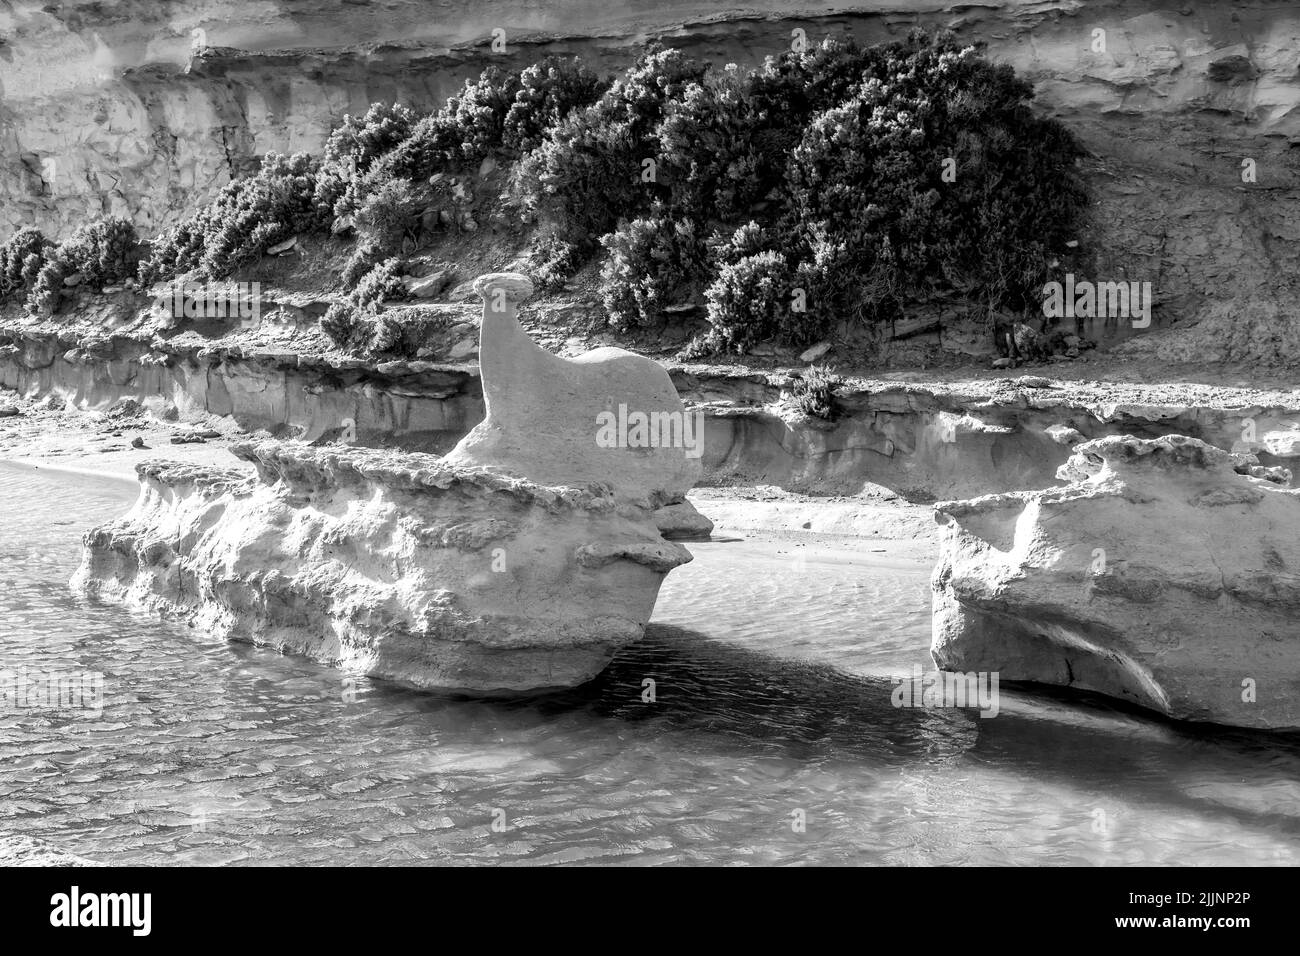 Plano blanco y negro de una gran roca de piedra caliza en un charco de agua sobre una plataforma de corte de roca, erosionada en forma de ballena. Malta, Islas Maltesas Foto de stock